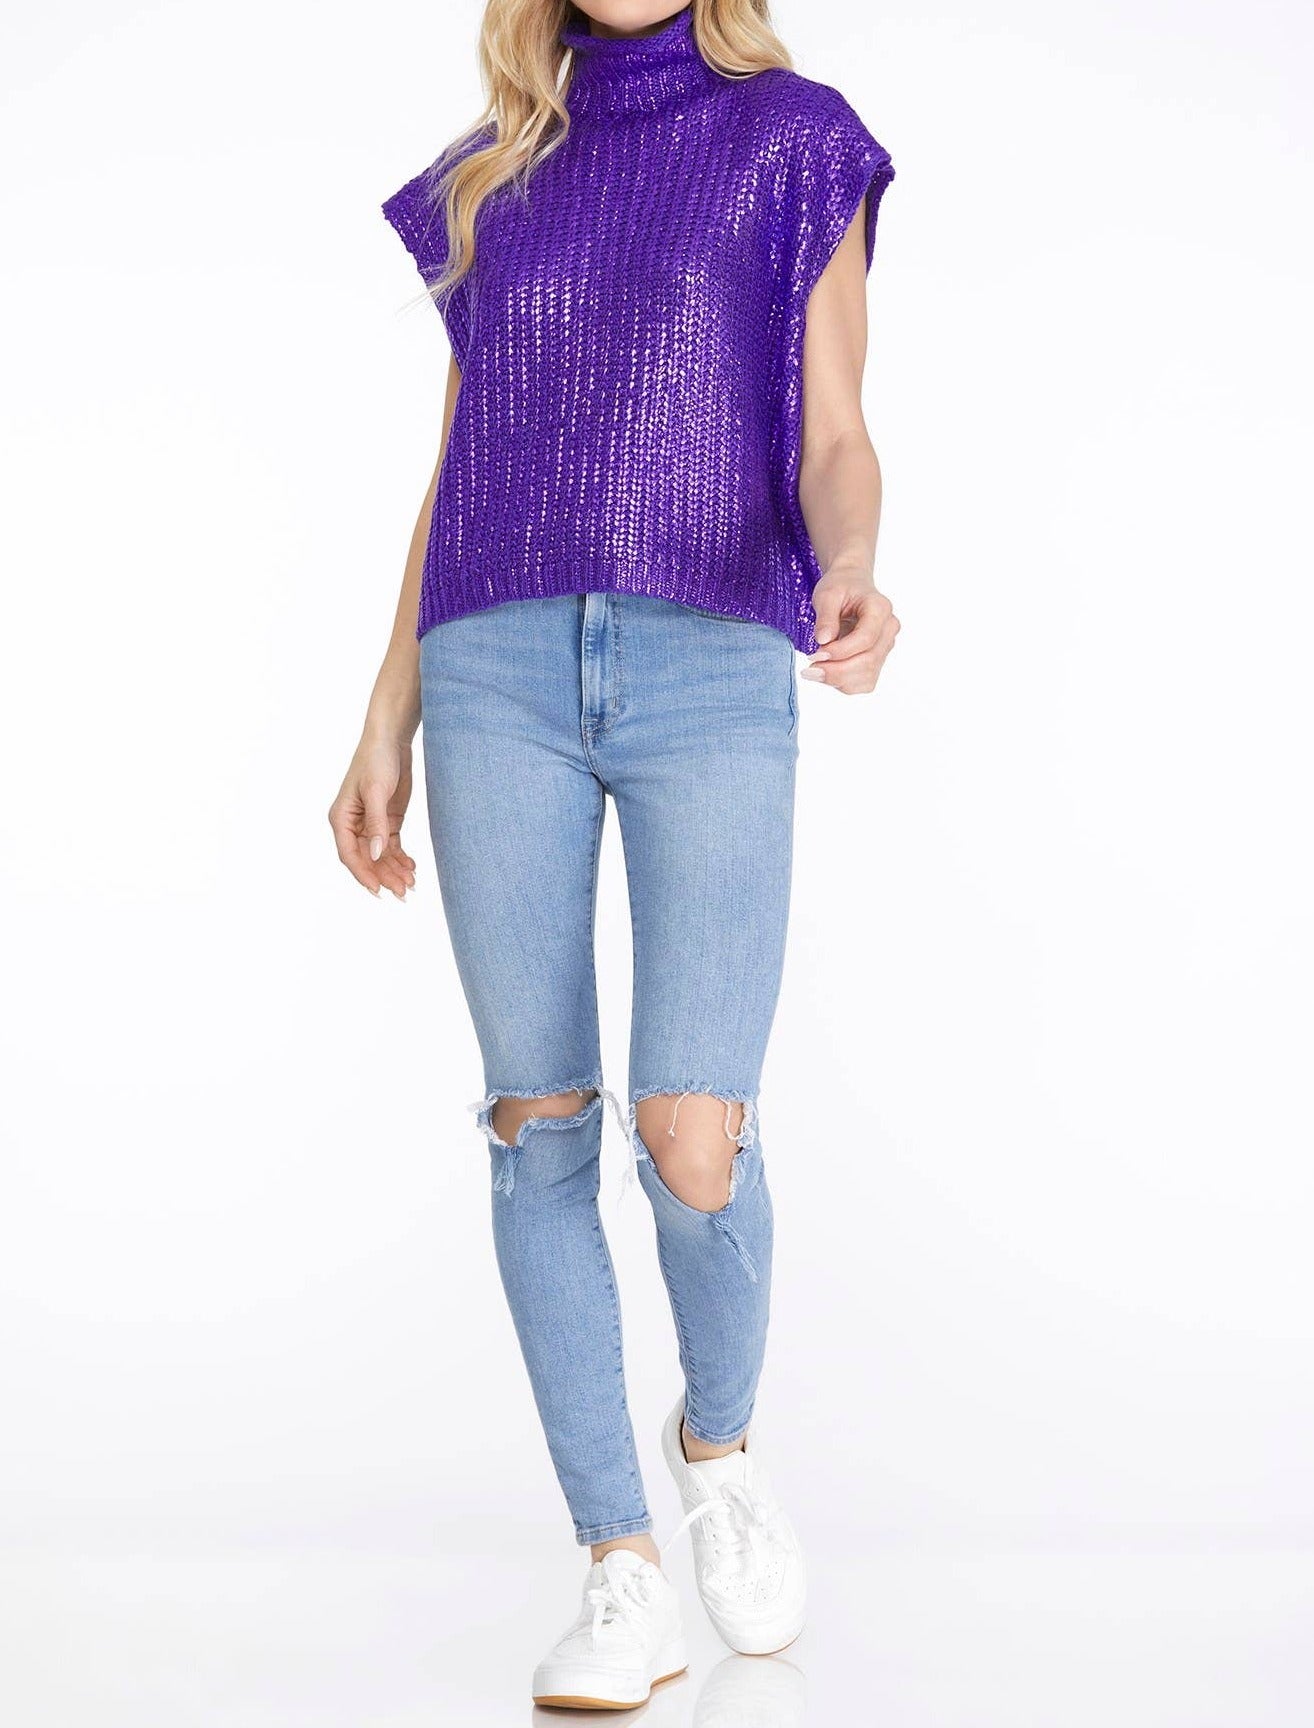 Purple Foiled Sweater